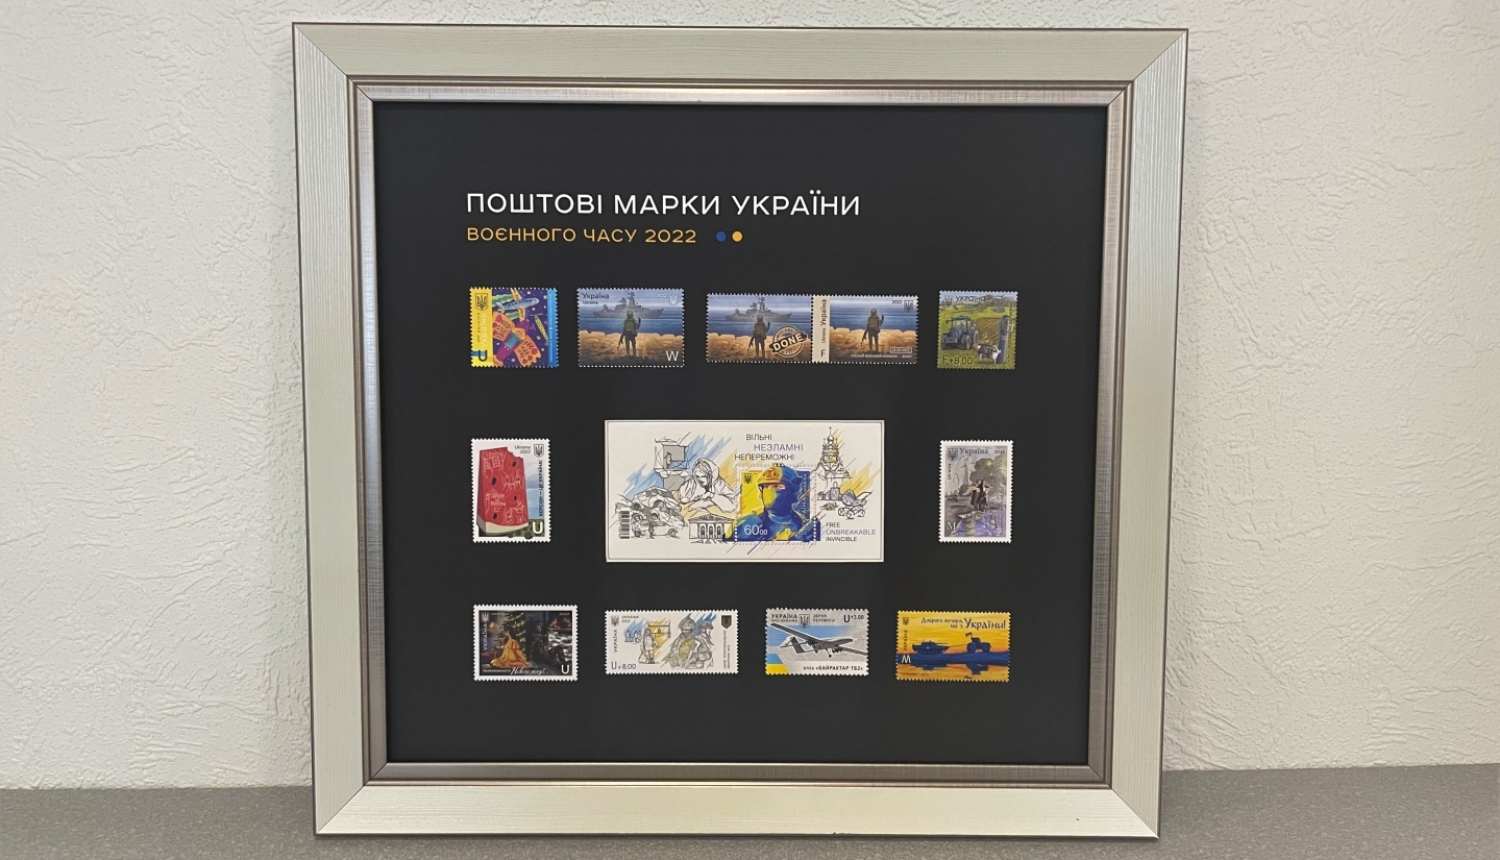 Čerņihivas pilsēta Ukrainā dāvina Ogres novada pašvaldībai pastmarku izlasi “Kara stunda 2022”